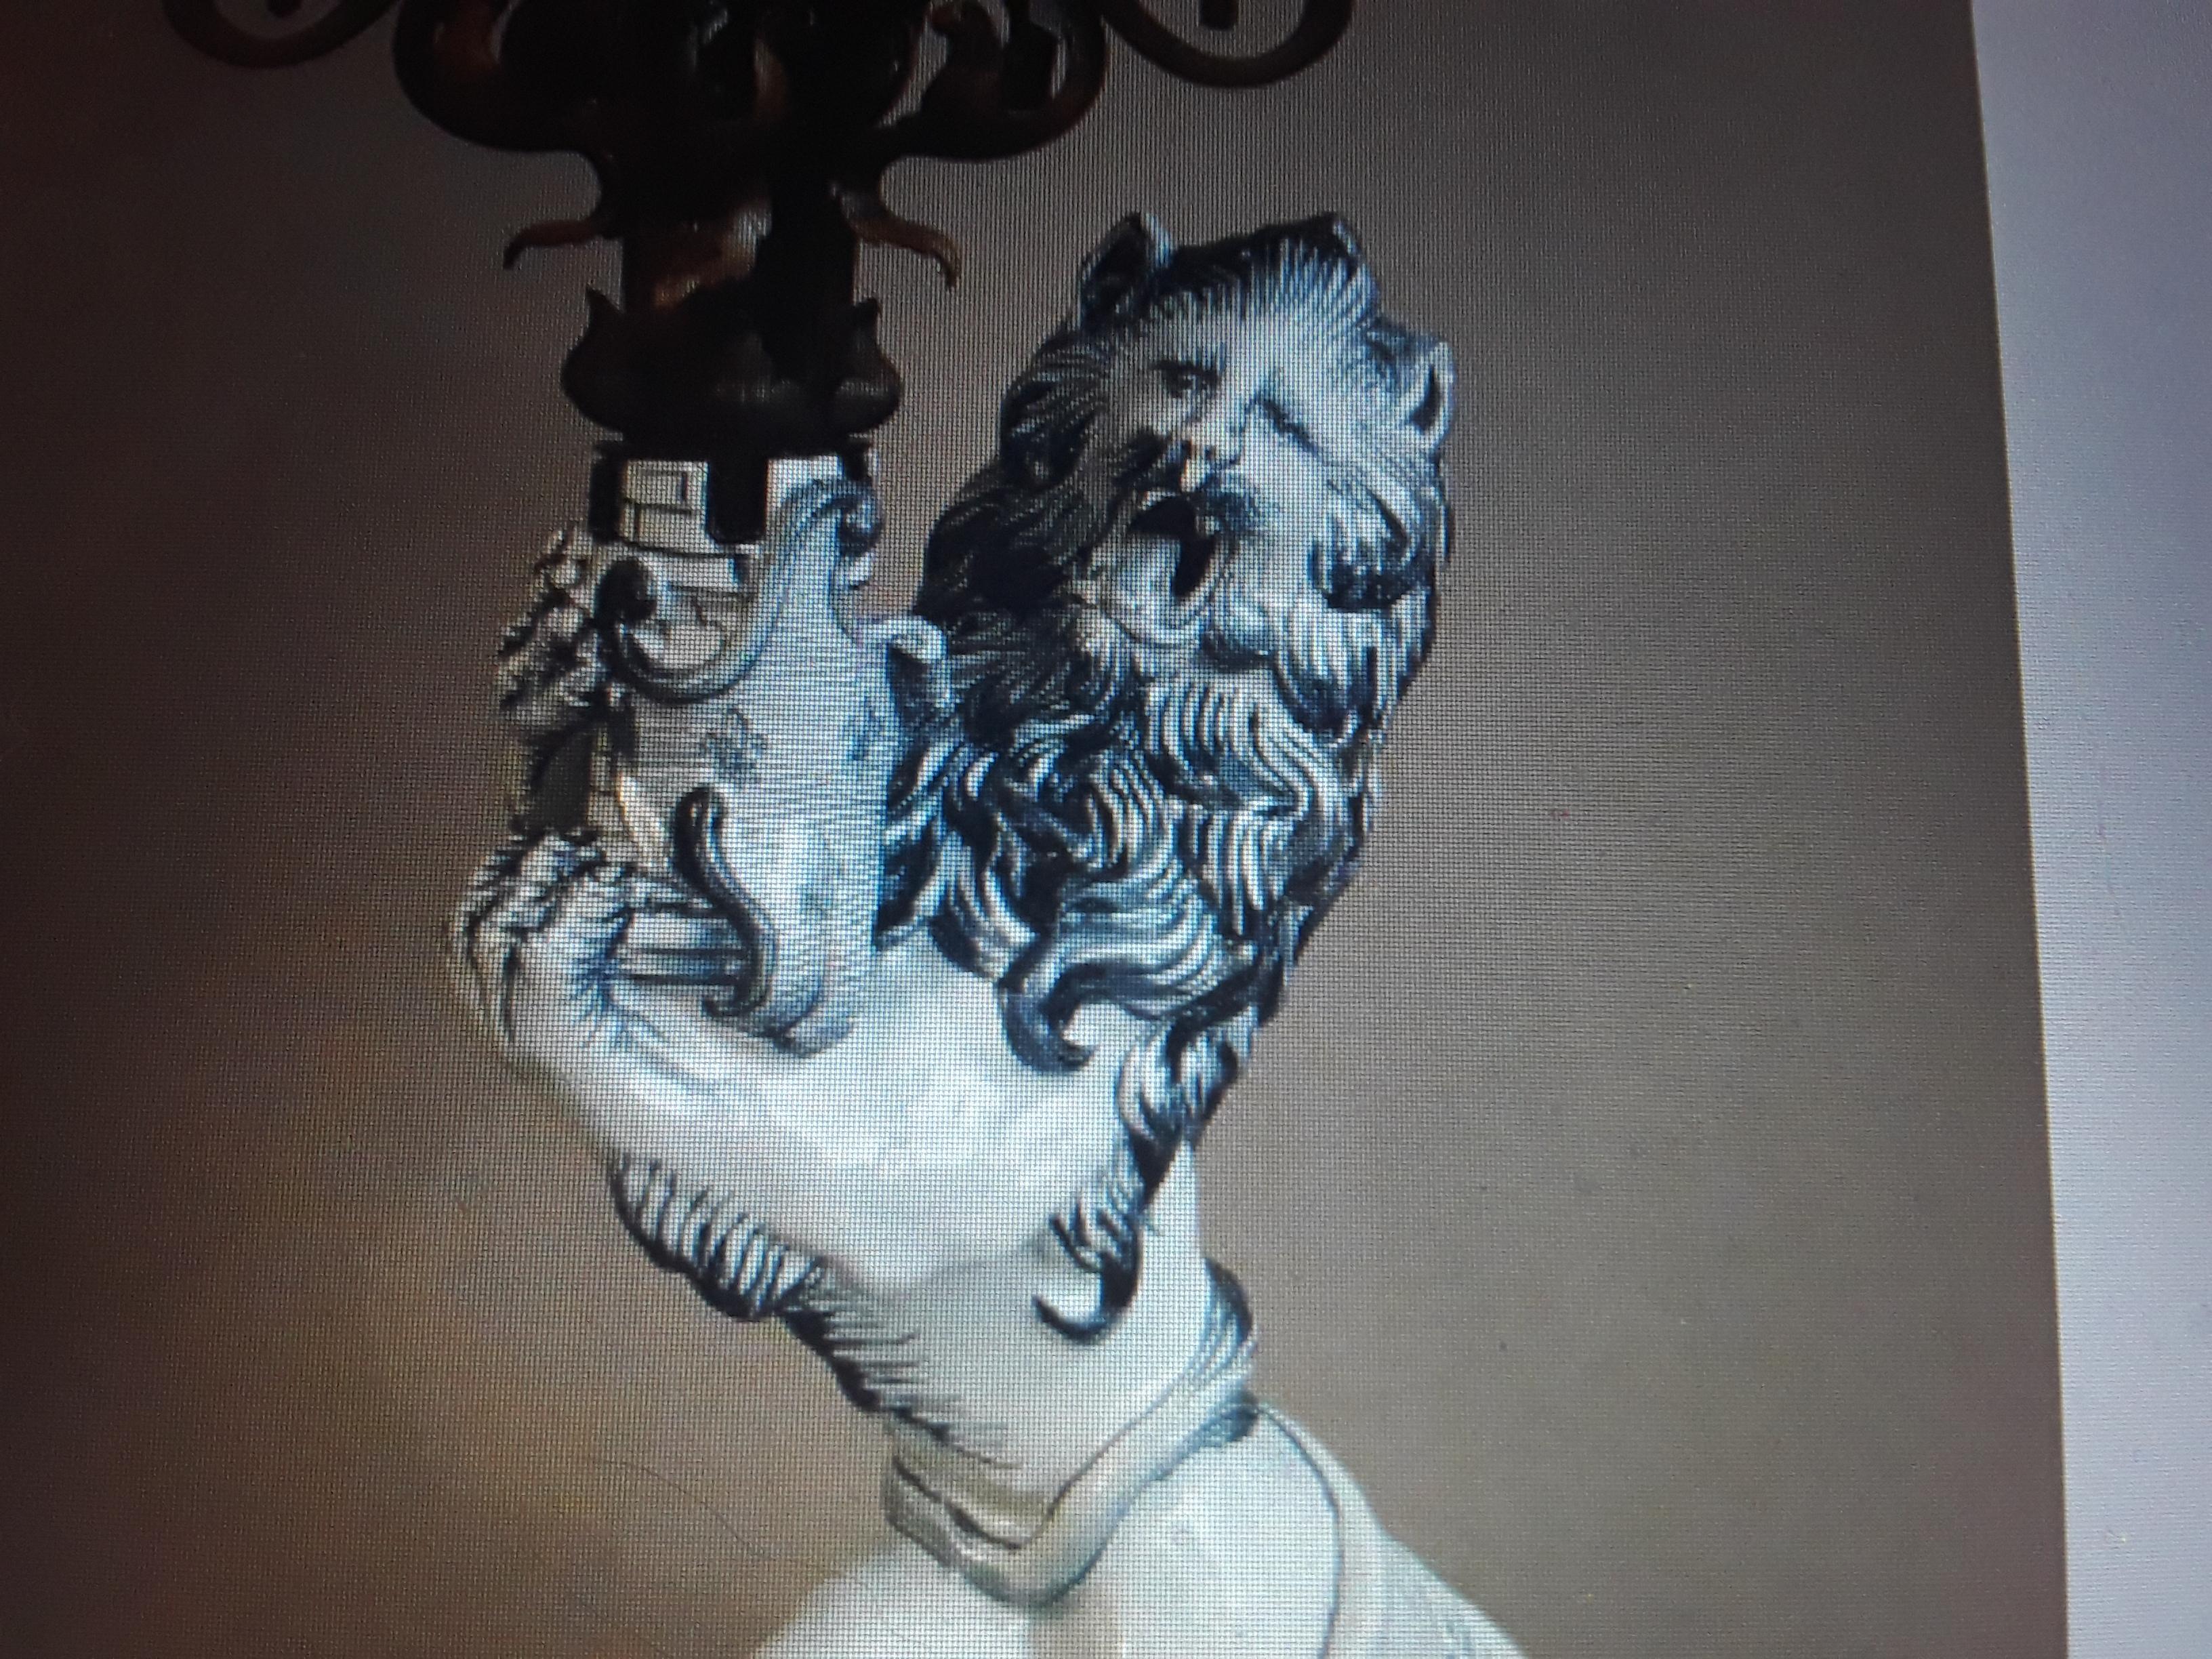 Unglaubliches Stück hier! Riesige antike Französisch Porzellan Heraldic Roaring Lion Kandelaber / Tischlampe. 1890.s. Unterzeichnet und unterschrieben. Sehr gute Investition Qualität Tischlampe. Jetzt in seinem ursprünglichen, nicht elektrifizierten